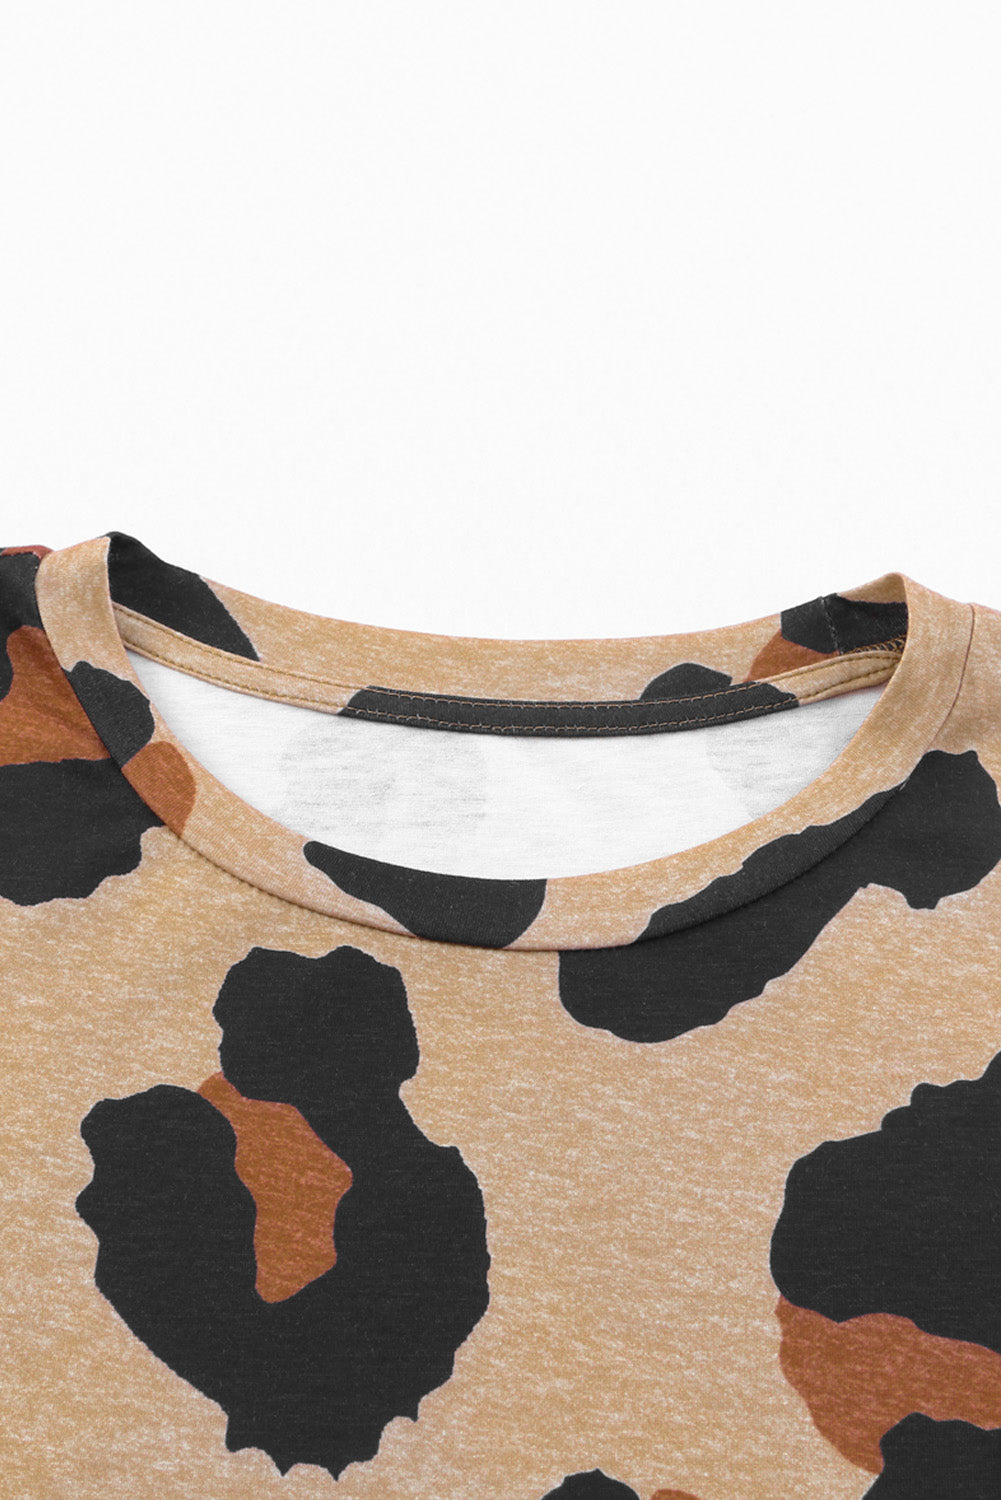 Rjava ohlapna majica z leopardjim vzorcem za fante